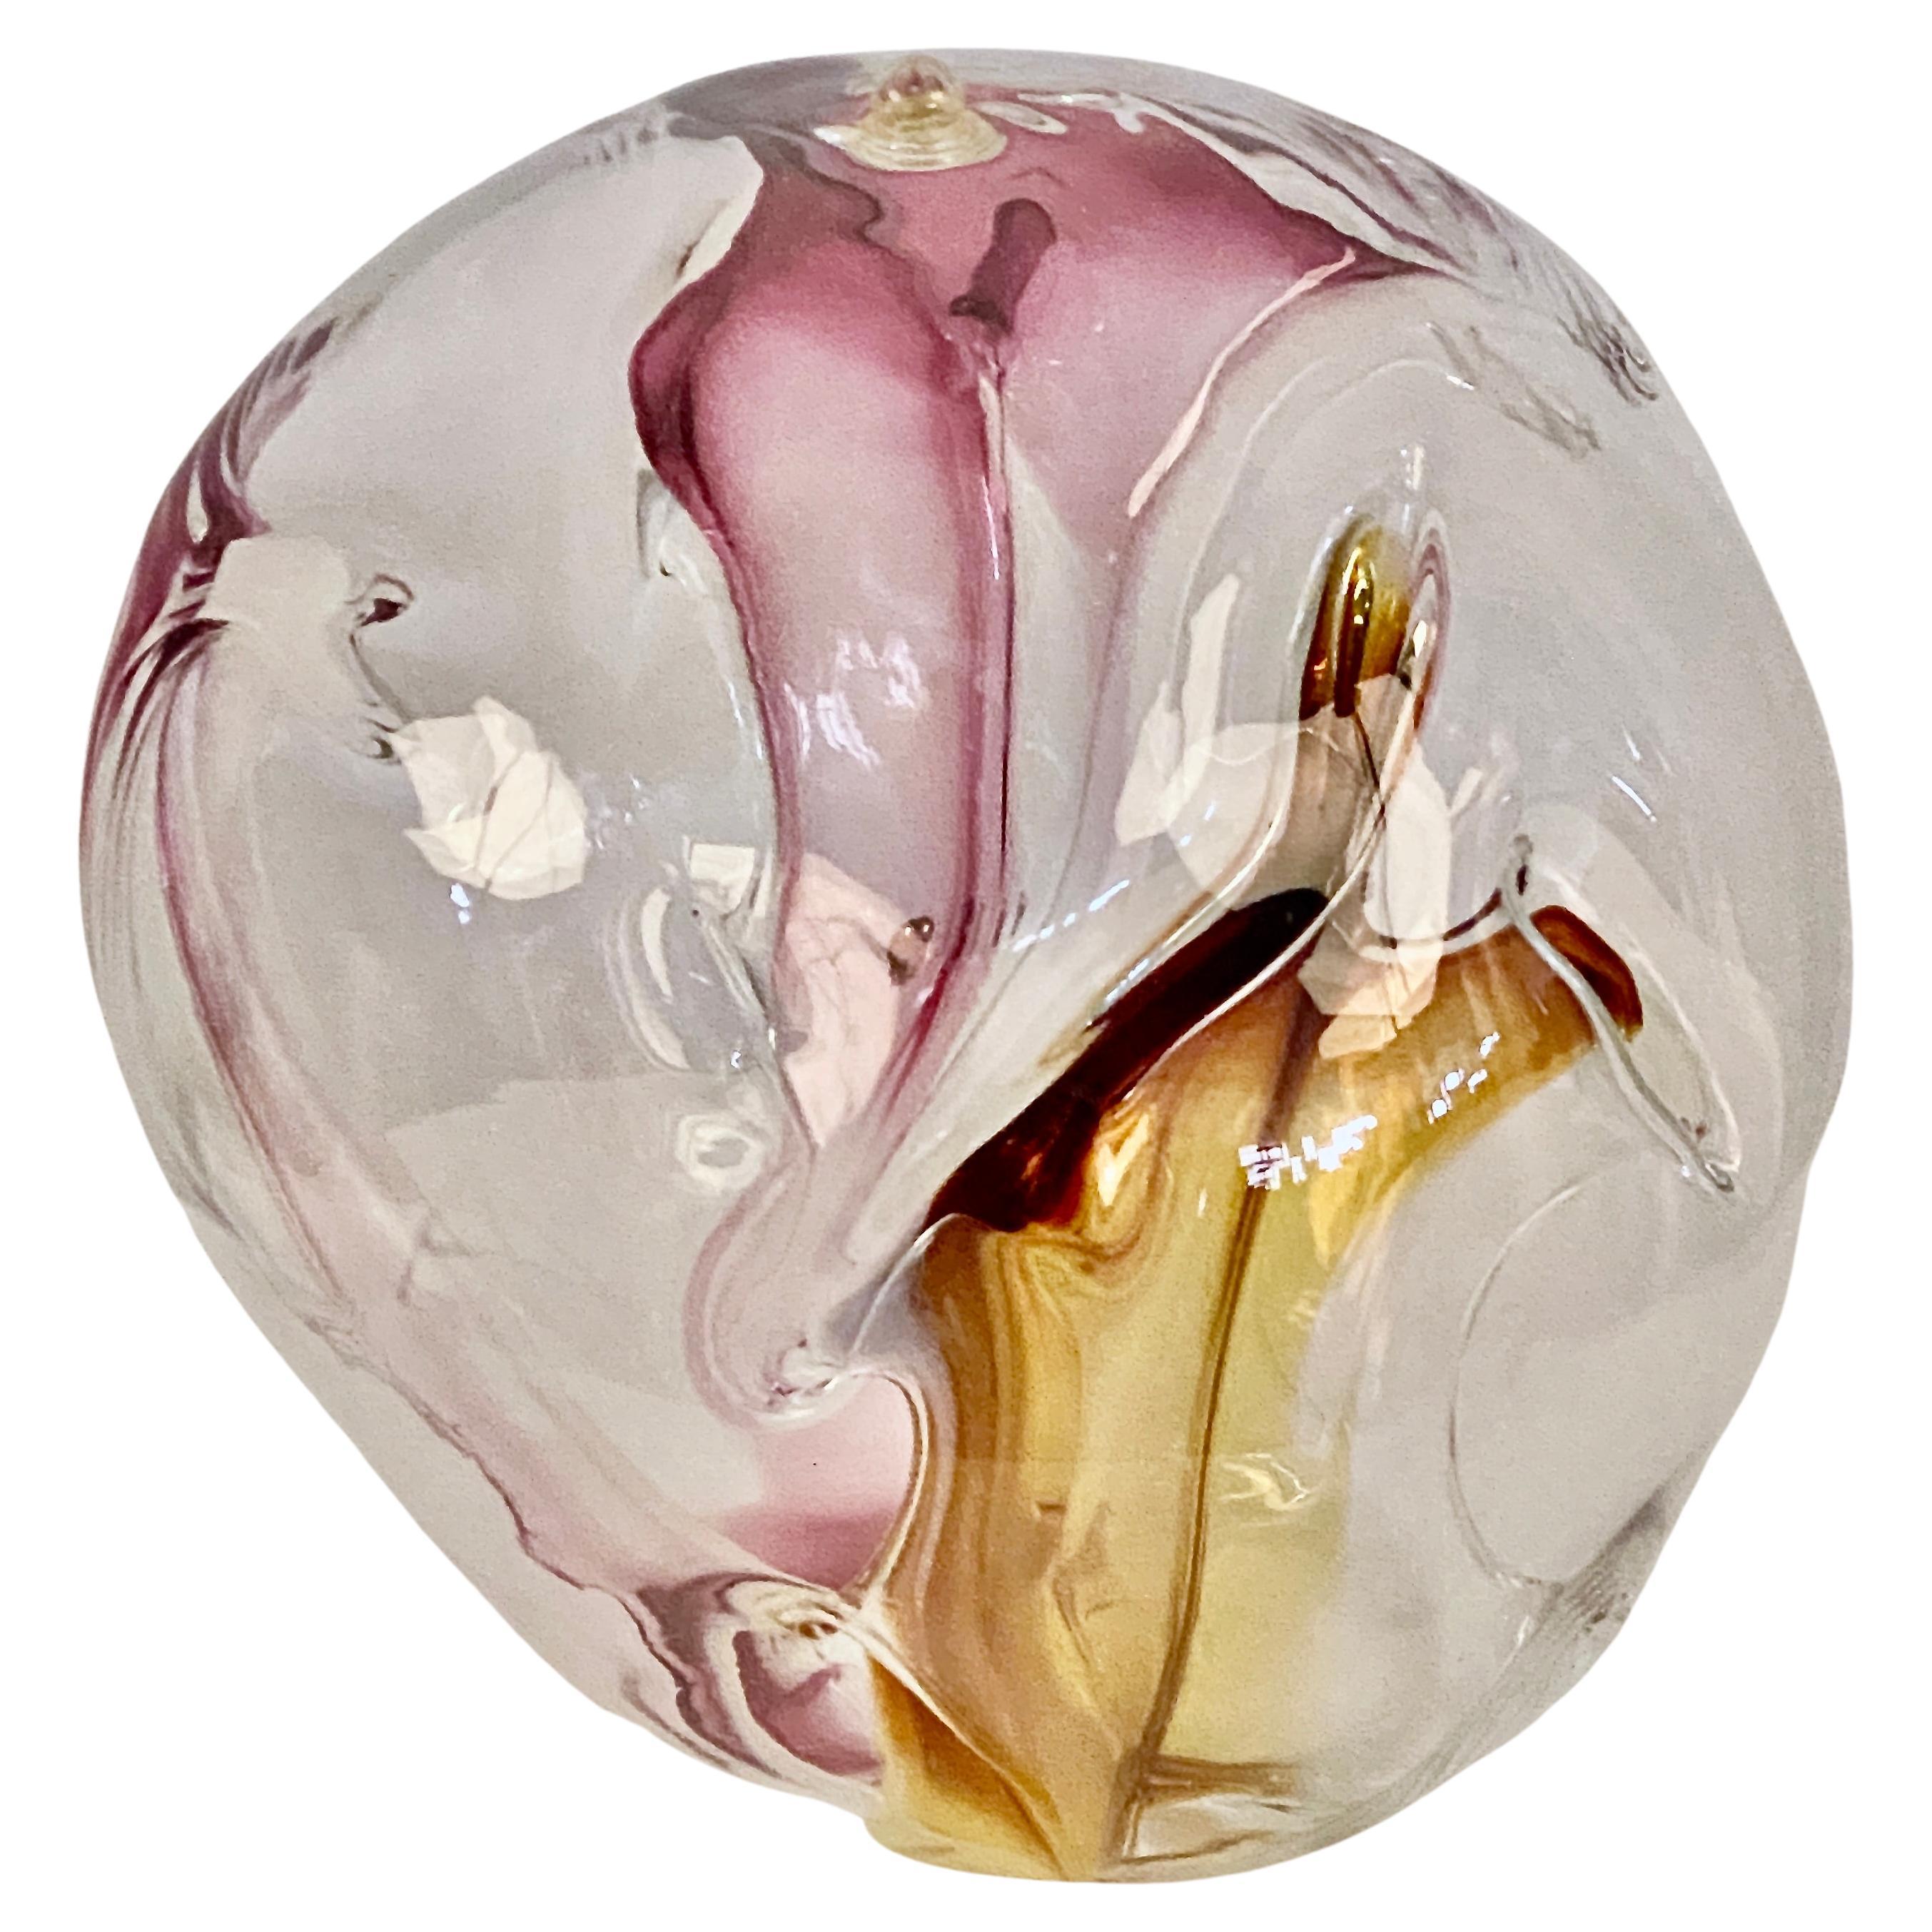 Peter Bramhall (geb. 1942) ist ein amerikanischer postmoderner Studiokünstler, der für seine unverwechselbaren abstrakten Glaskugelskulpturen bekannt ist, die im Inneren organische Glasformen in leuchtenden Farben aufweisen. Dieses Exemplar hat